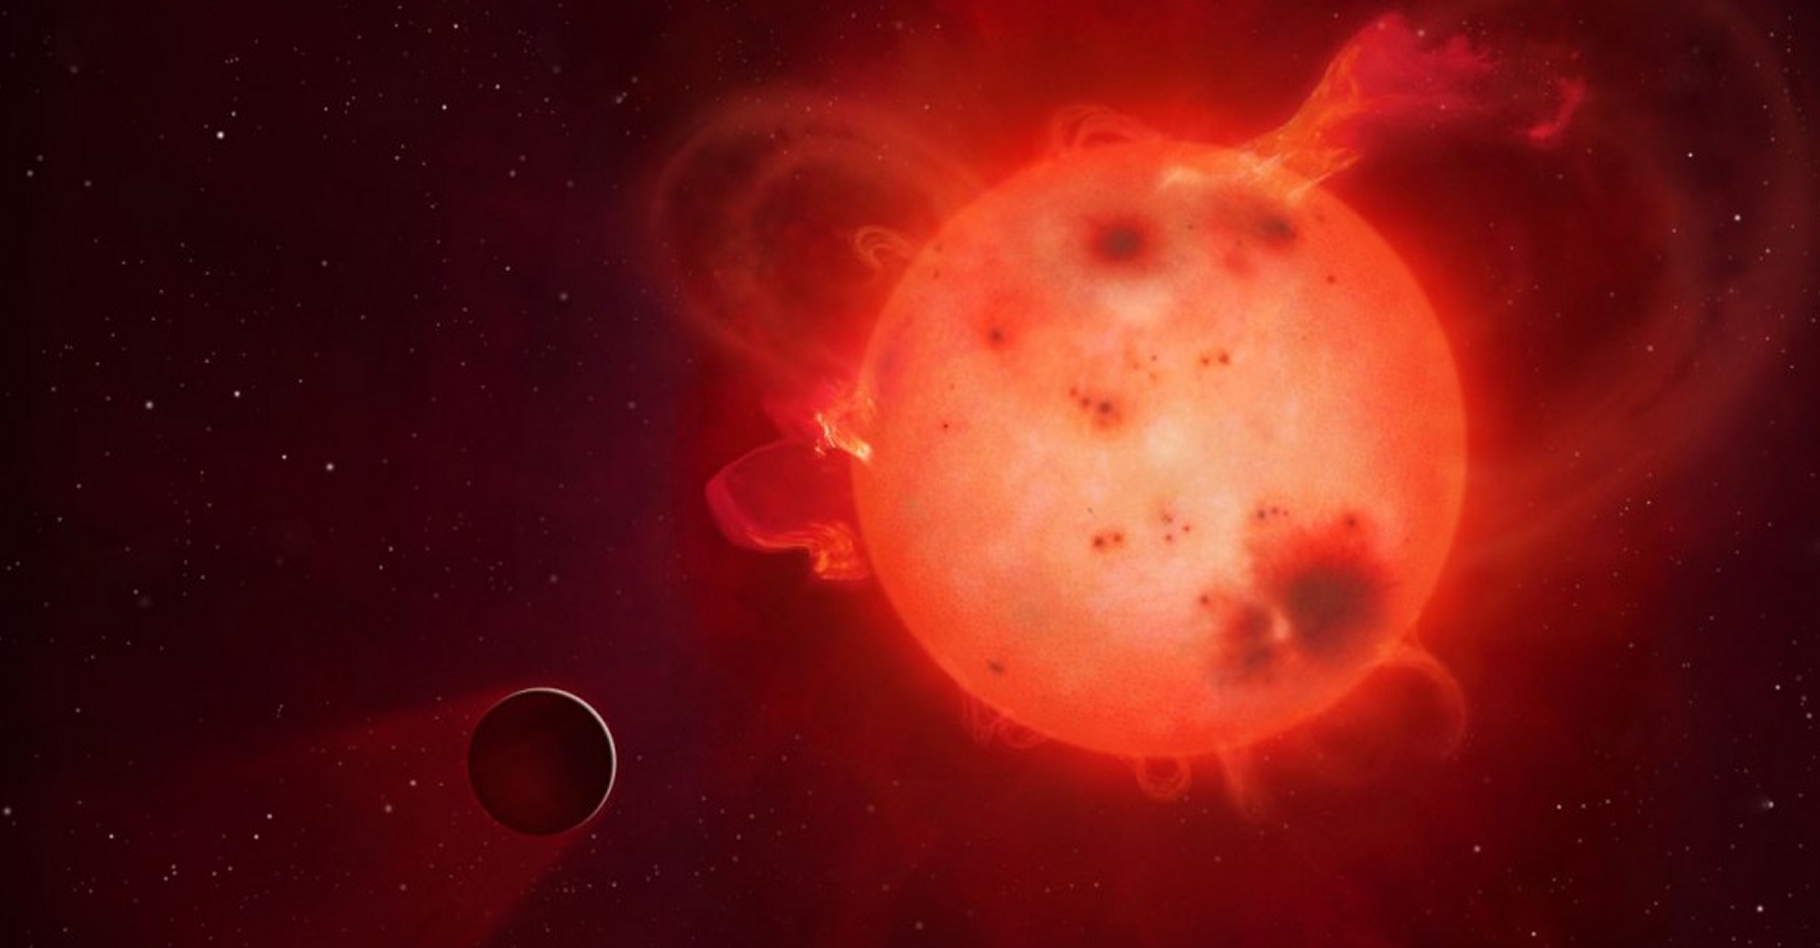 L'exoplanète Kepler-438b (représentée ici dans une vue d'artiste) ressemble beaucoup à la Terre mais elle tourne, à faible distance, autour d'une naine rouge paraissant assez colérique. La vie est-elle possible tout près de ces petites étoiles, largement majoritaires ? Des modèles climatiques répondent oui, mais à certaines conditions. © Mark A. Garlick,&nbsp;university of Warwick